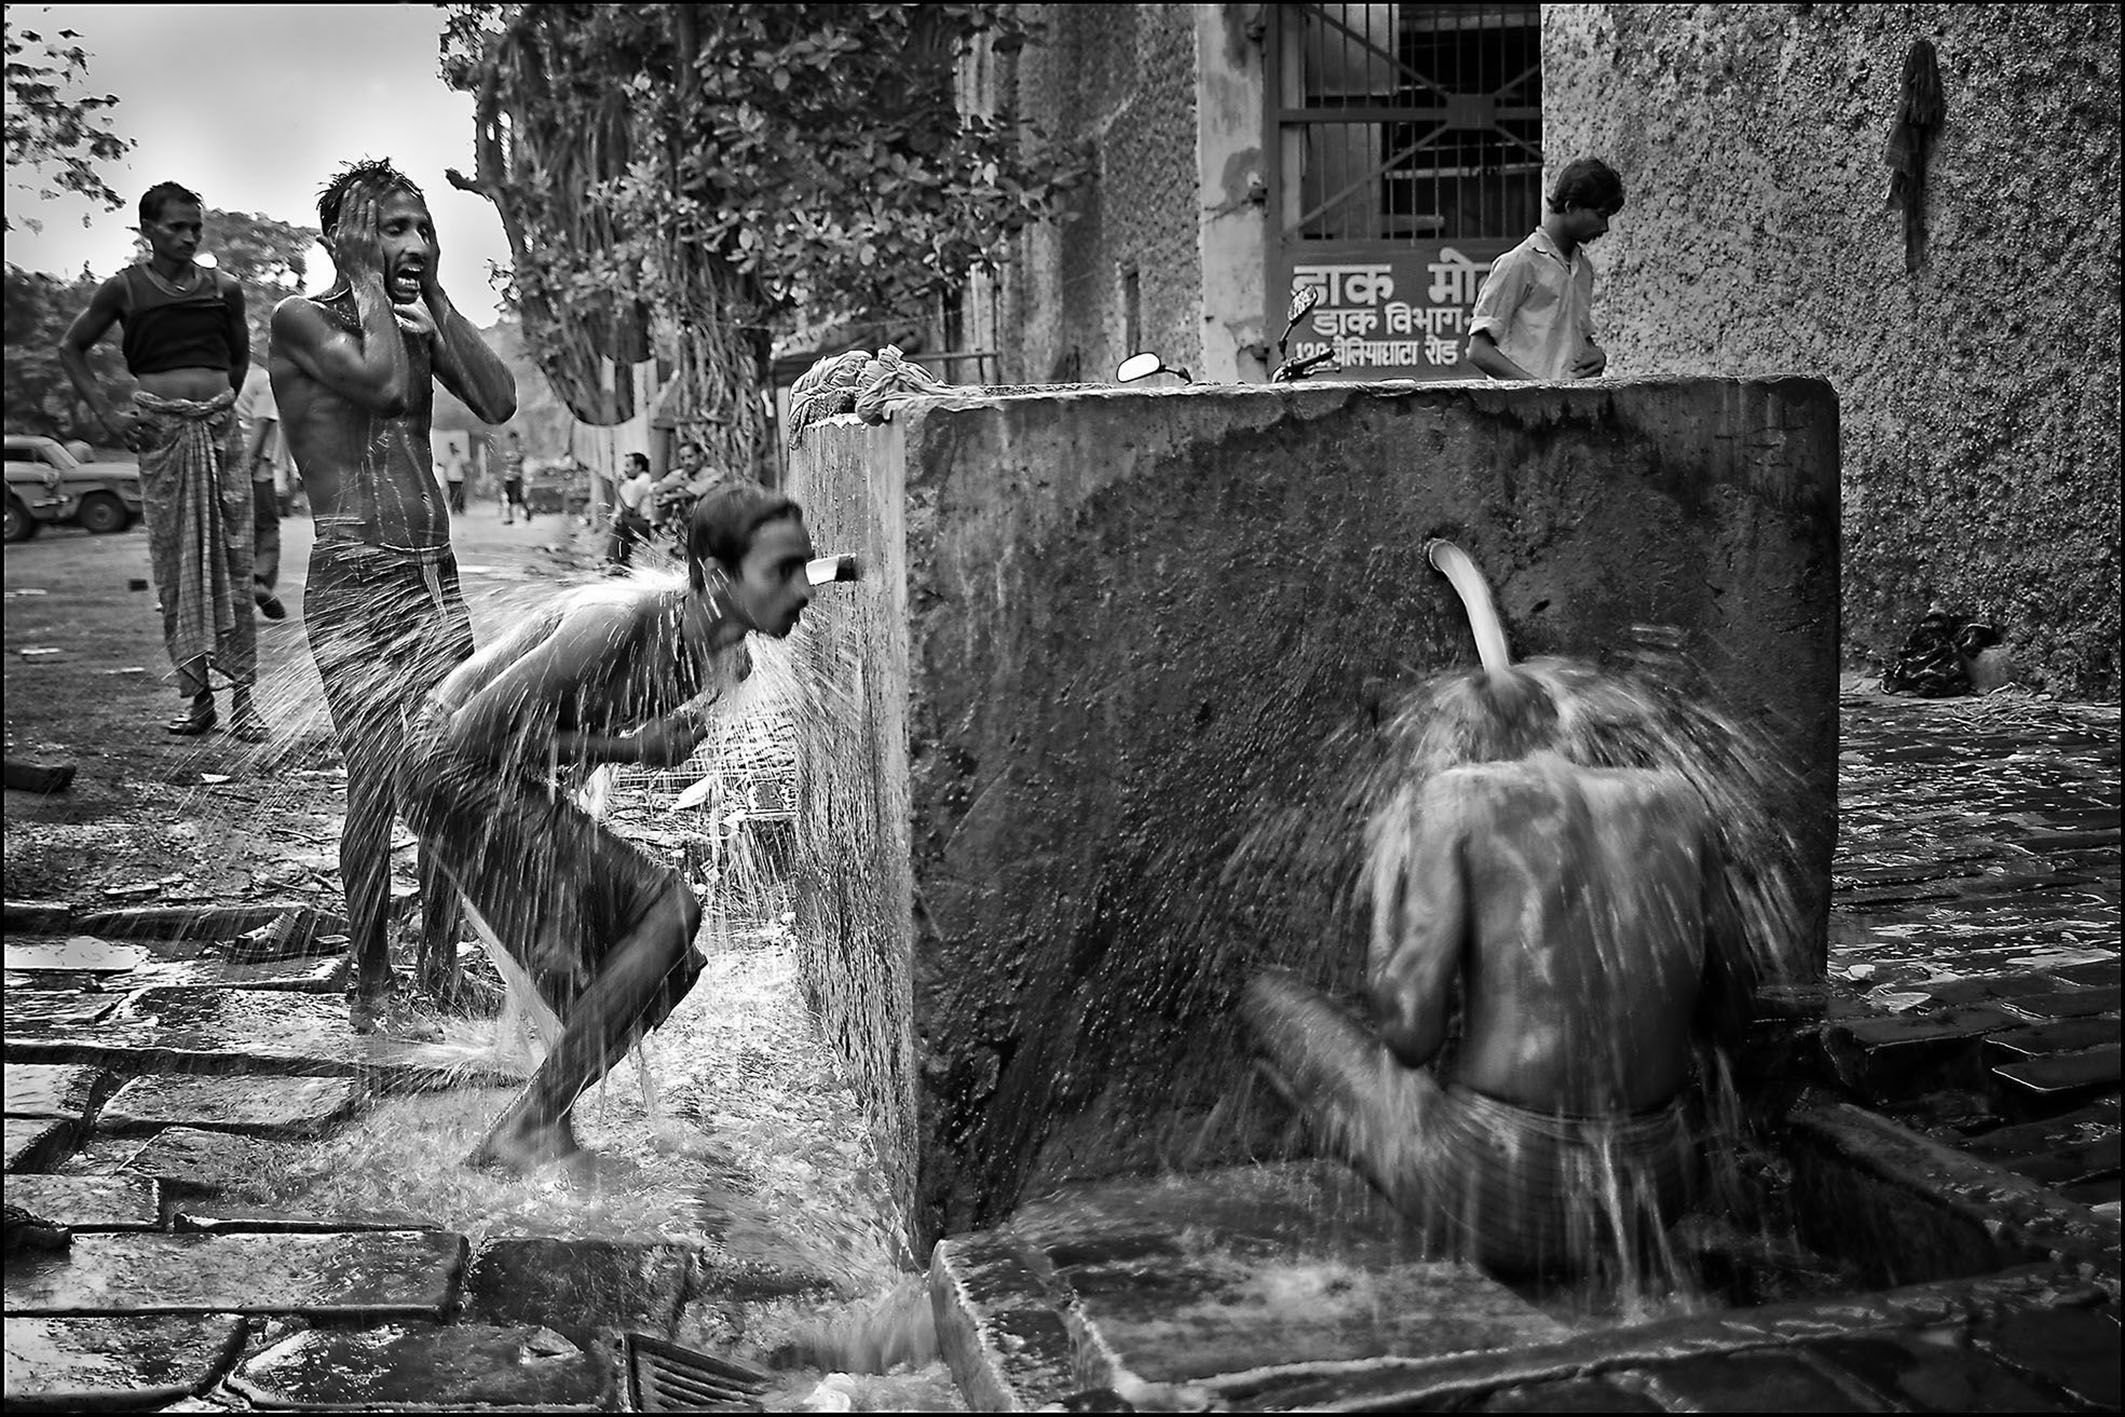 Inde, Calcutta. Scène courante où les résidents des quartiers périphériques sans approvisionnement en eau se lavent dans la rue :  une des photos exposées au festival Visa pour l'image de Perpignan © Ian Berry / Magnum Photos